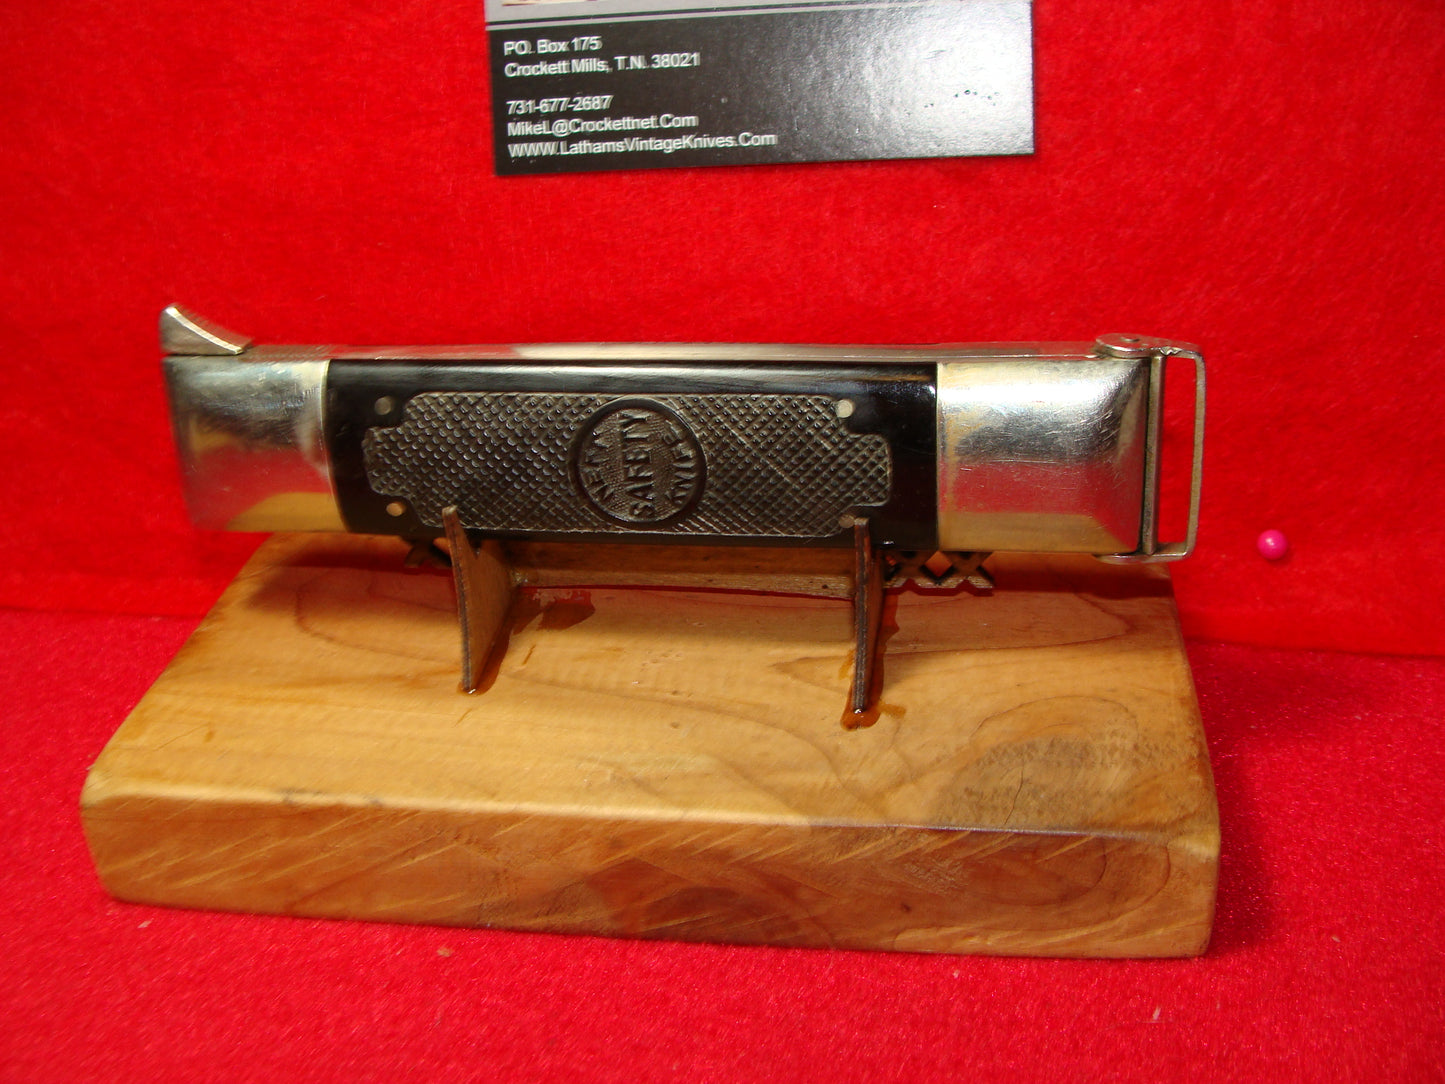 NEFT SAFETY IMPROVED HUNTER 1925-35 HIDDEN BLADE VINTAGE AMERICAN MANUAL KNIFE BLACK PLASTIC HANDLES